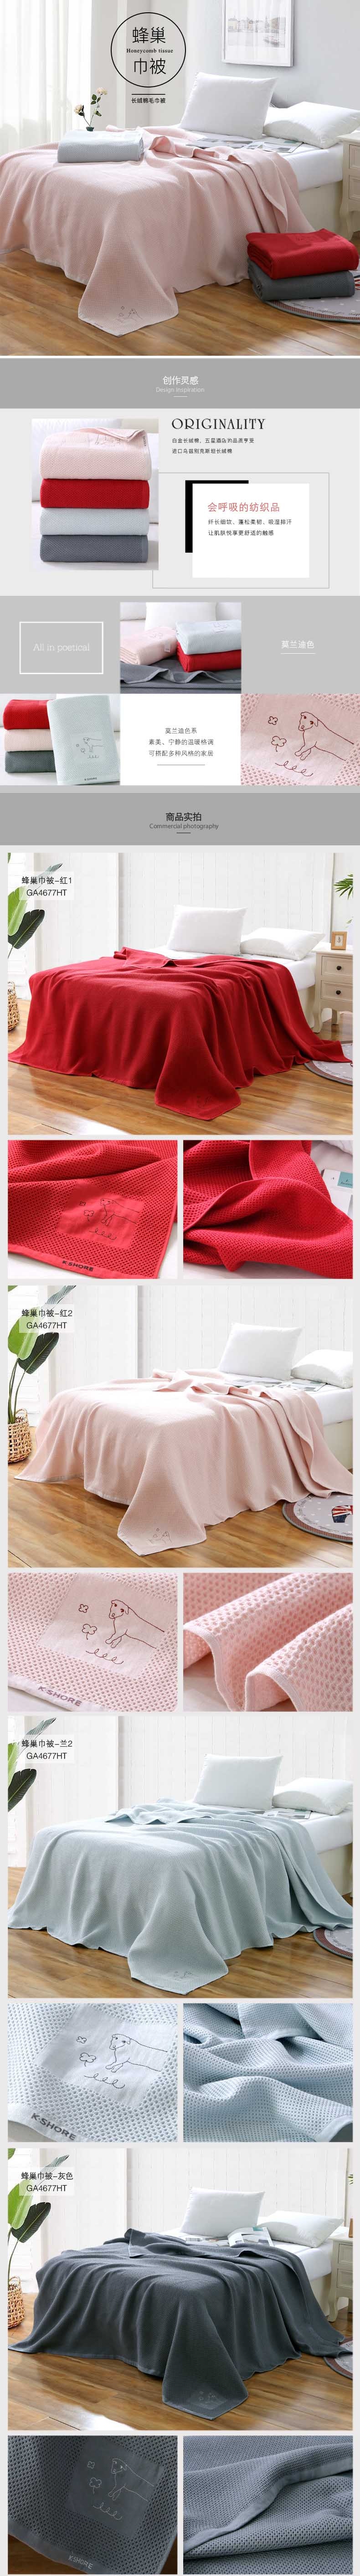 家用长绒棉毛巾毯 立体透气蜂巢纯棉多功能毯床单